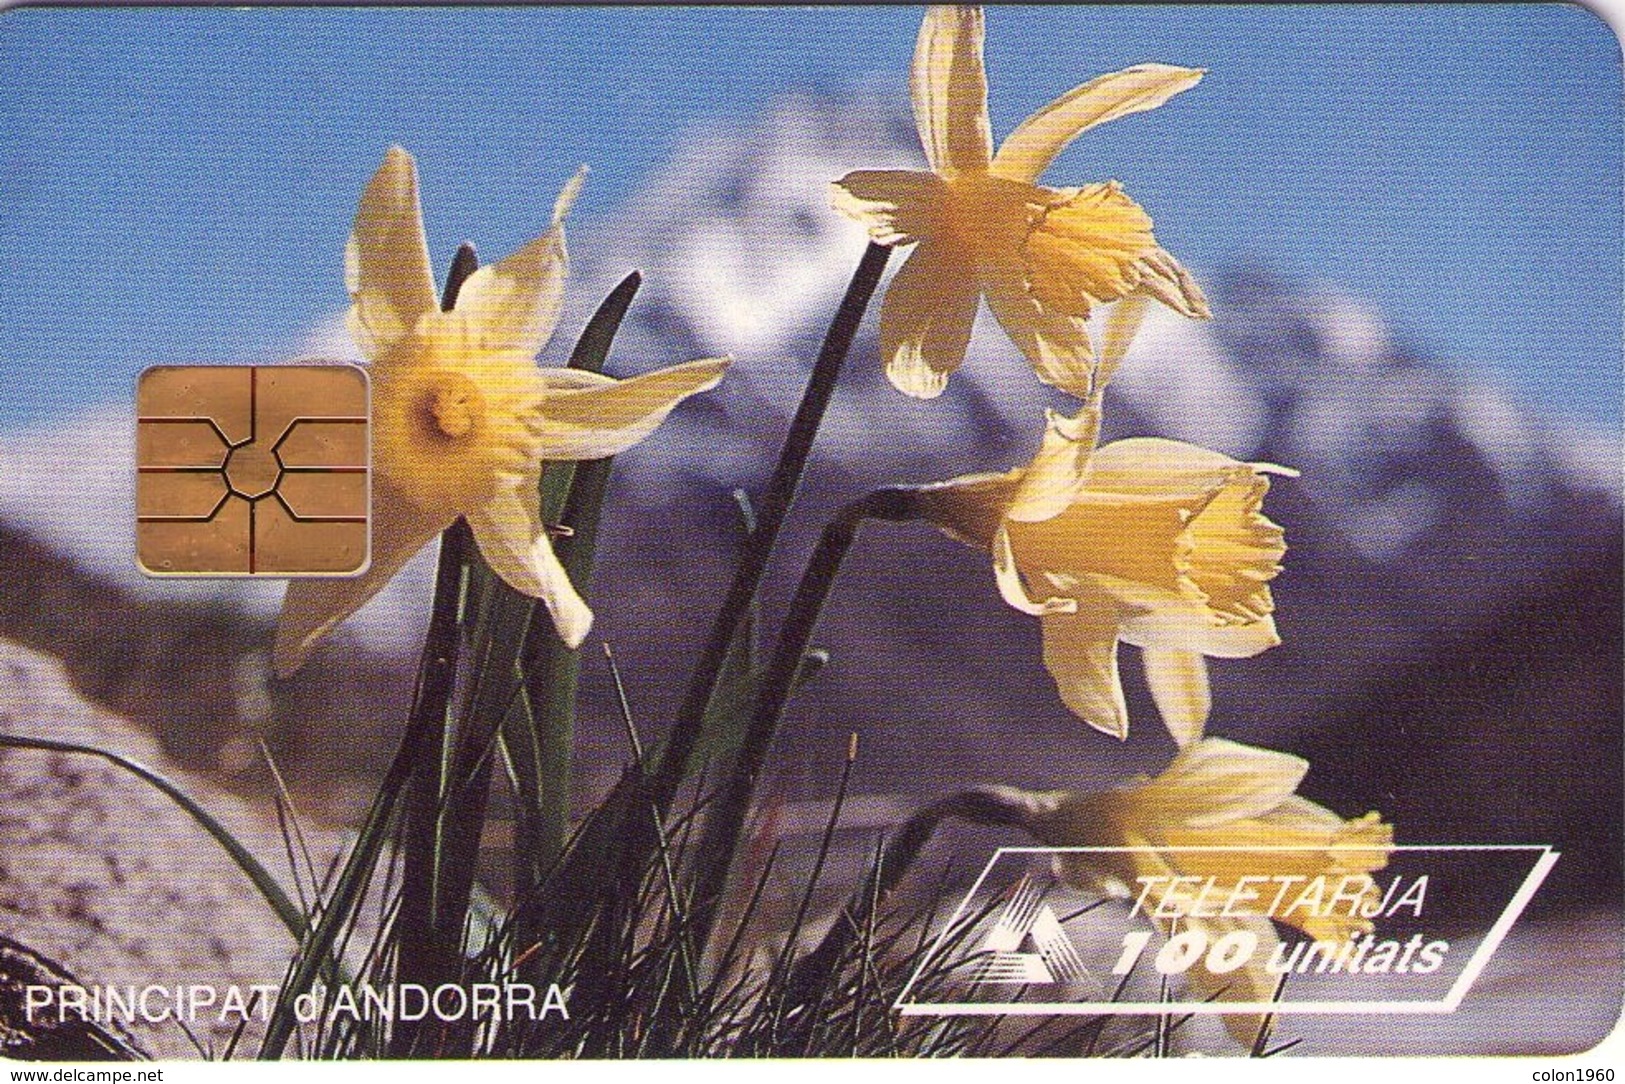 ANDORRA. FLOWER. Narcissus. 1995-06. 20000 Ex. AD-STA-0027B. (043) - Andorra